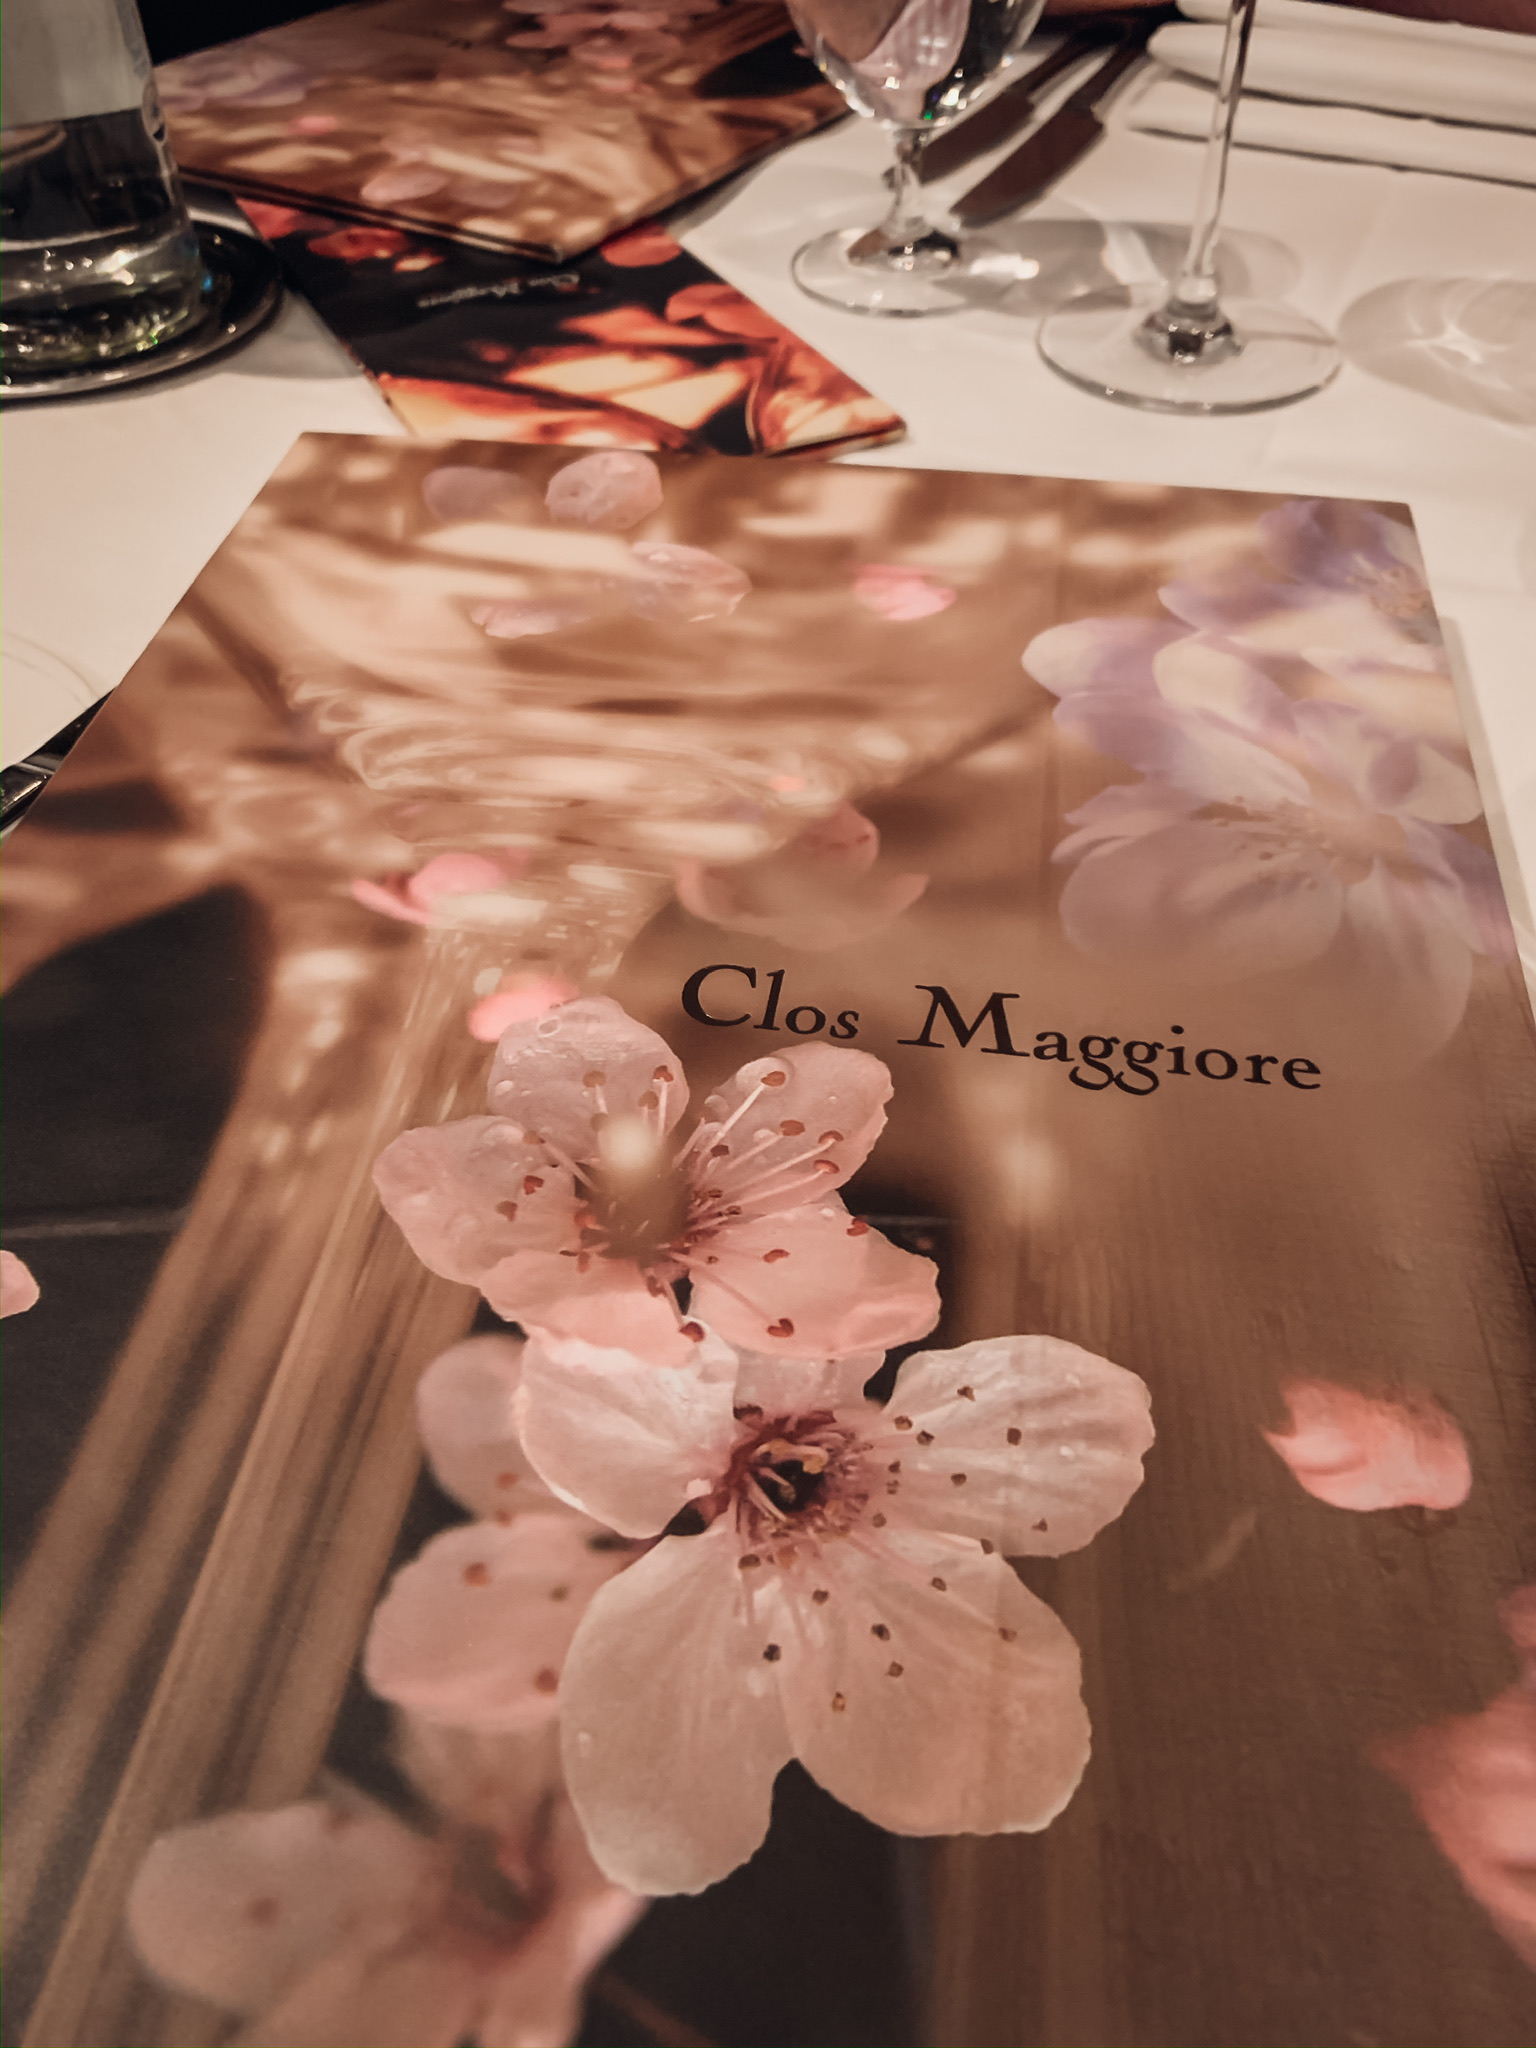 Clos Maggiore Restaurant, London